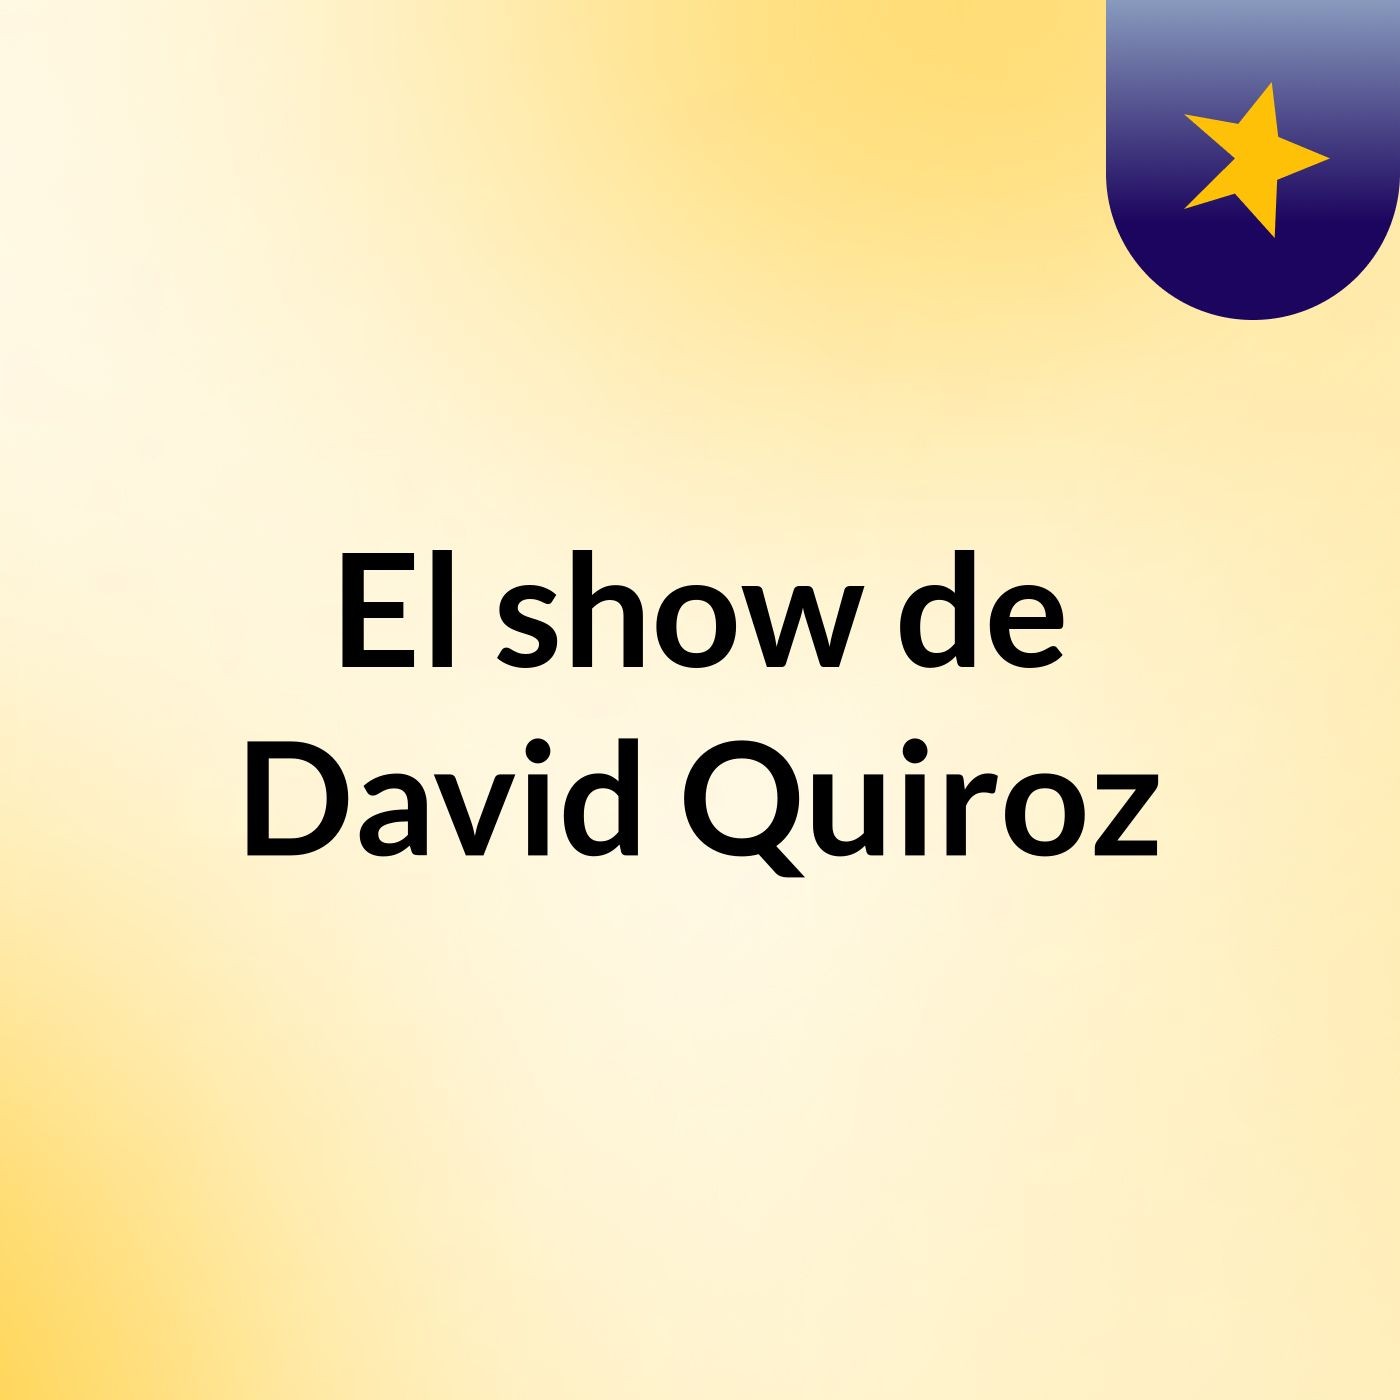 El show de David Quiroz